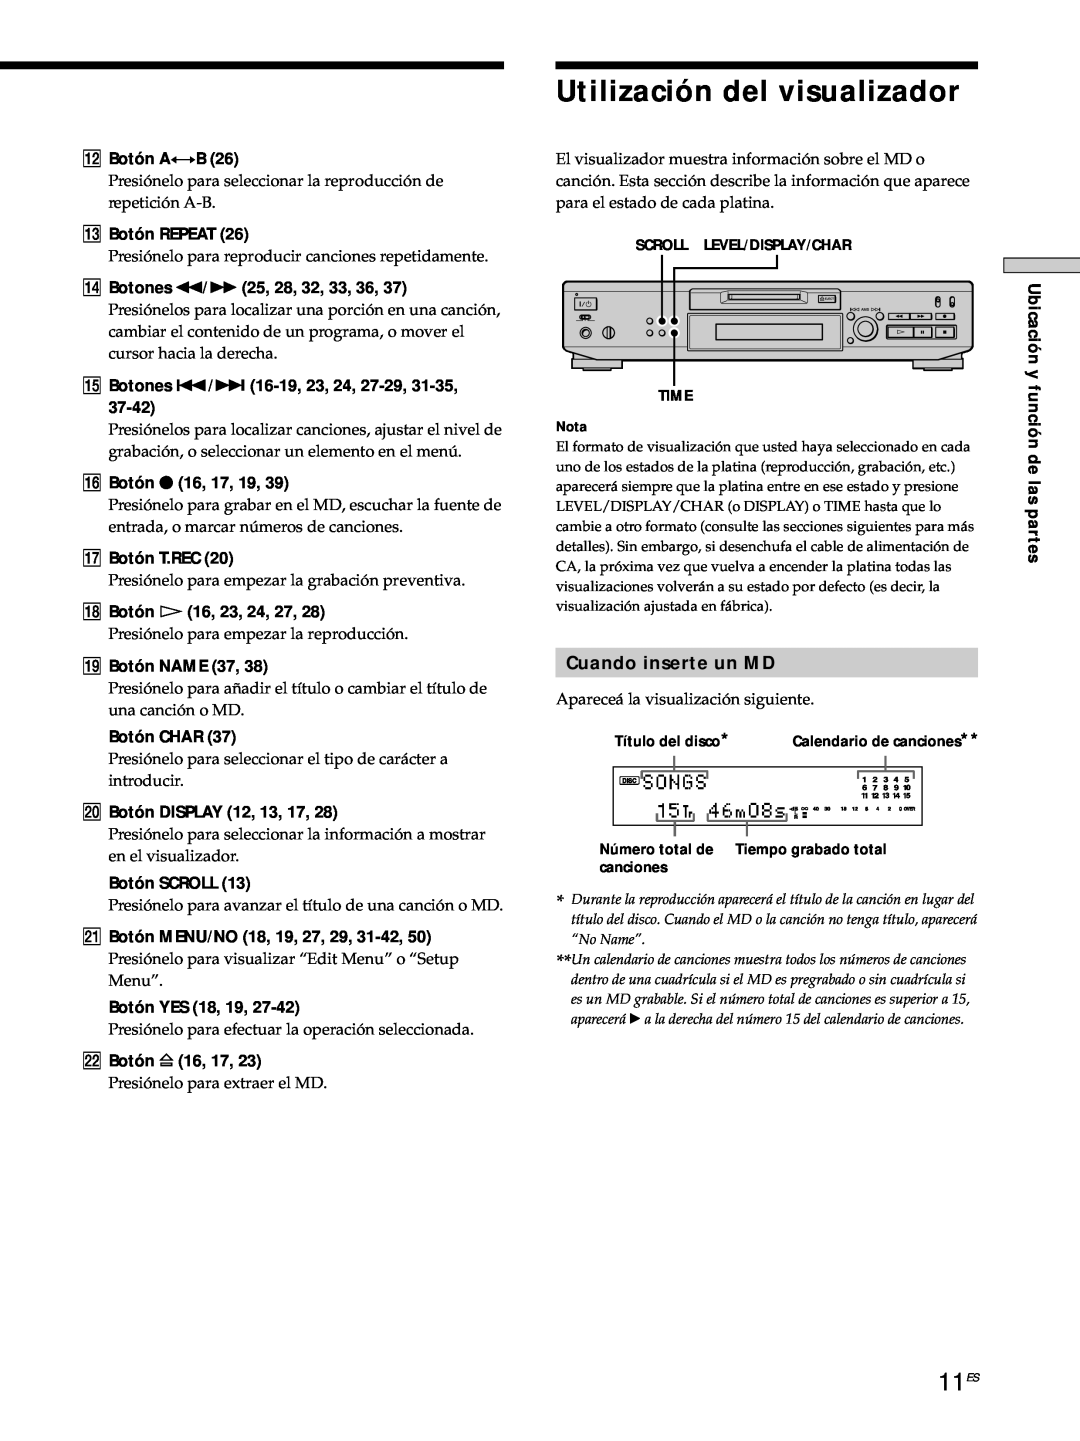 Sony MDS-JE530 manual Utilización del visualizador, 11ES, Cuando inserte un MD 